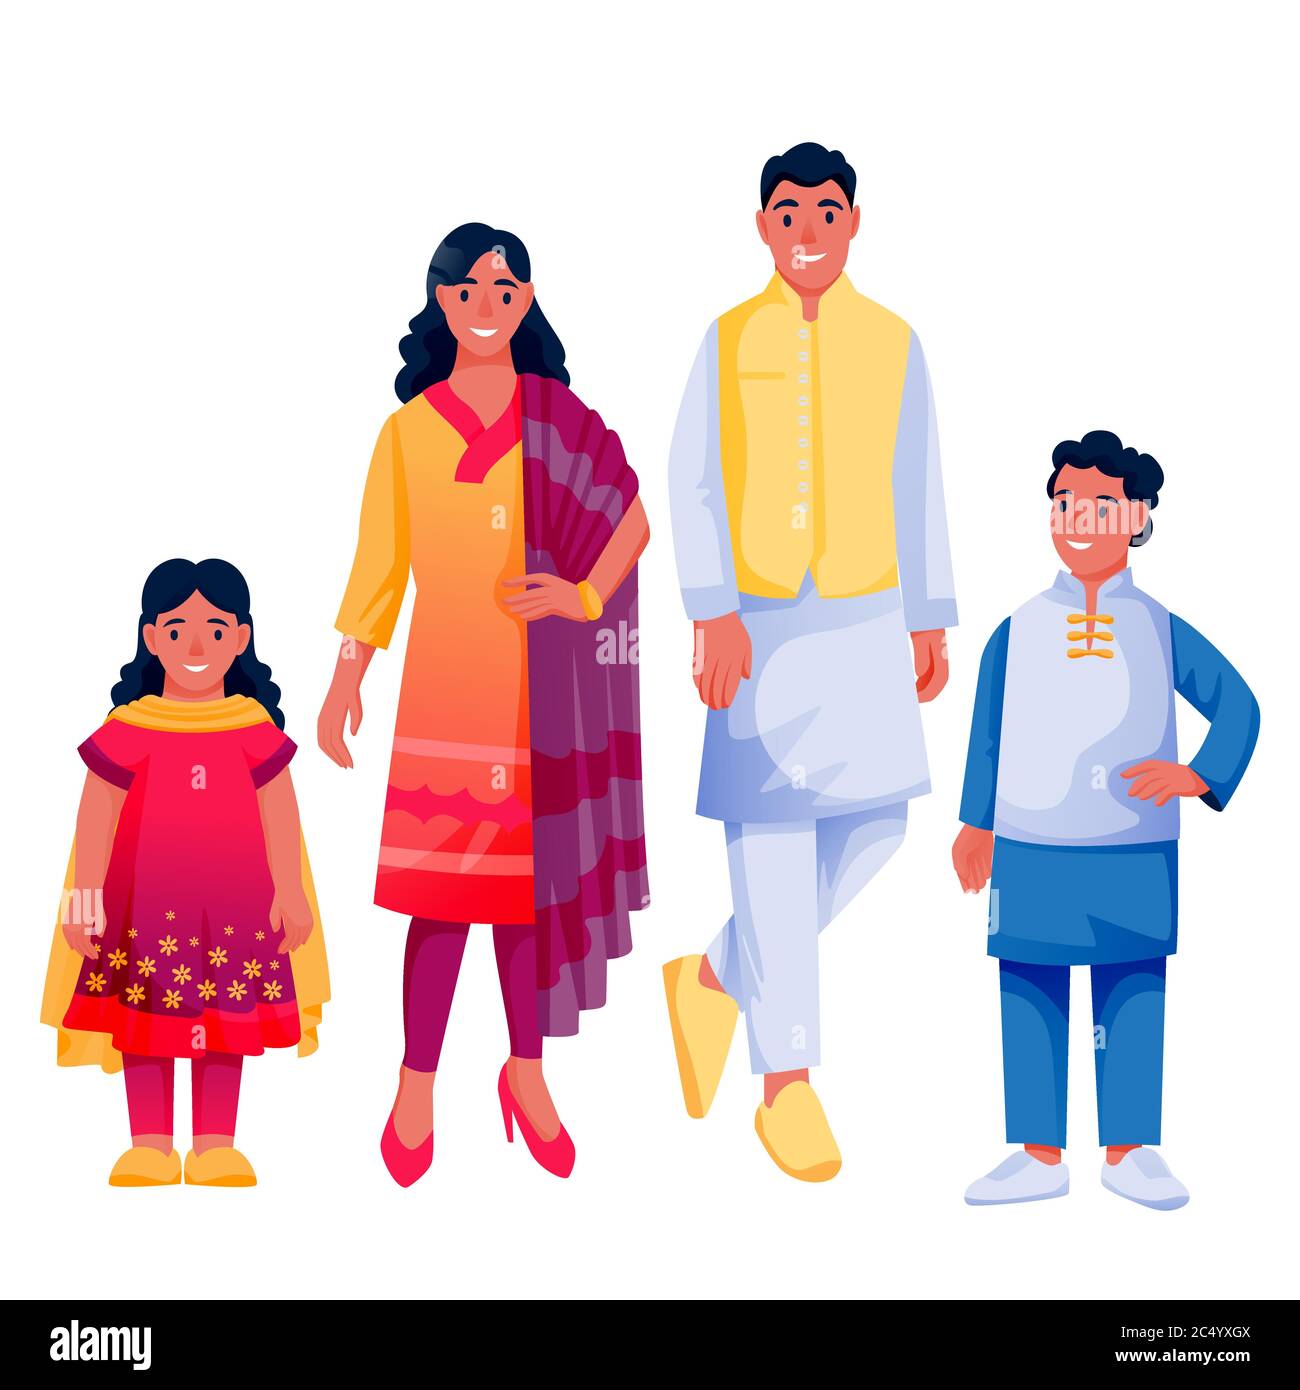 Indische glückliche Familie mit zwei Kindern, isoliert auf weißem Hintergrund. Vater, Mutter, Junge und Mädchen in farbenfroher traditioneller Kleidung. Vektor flach Cartoon ch Stock Vektor